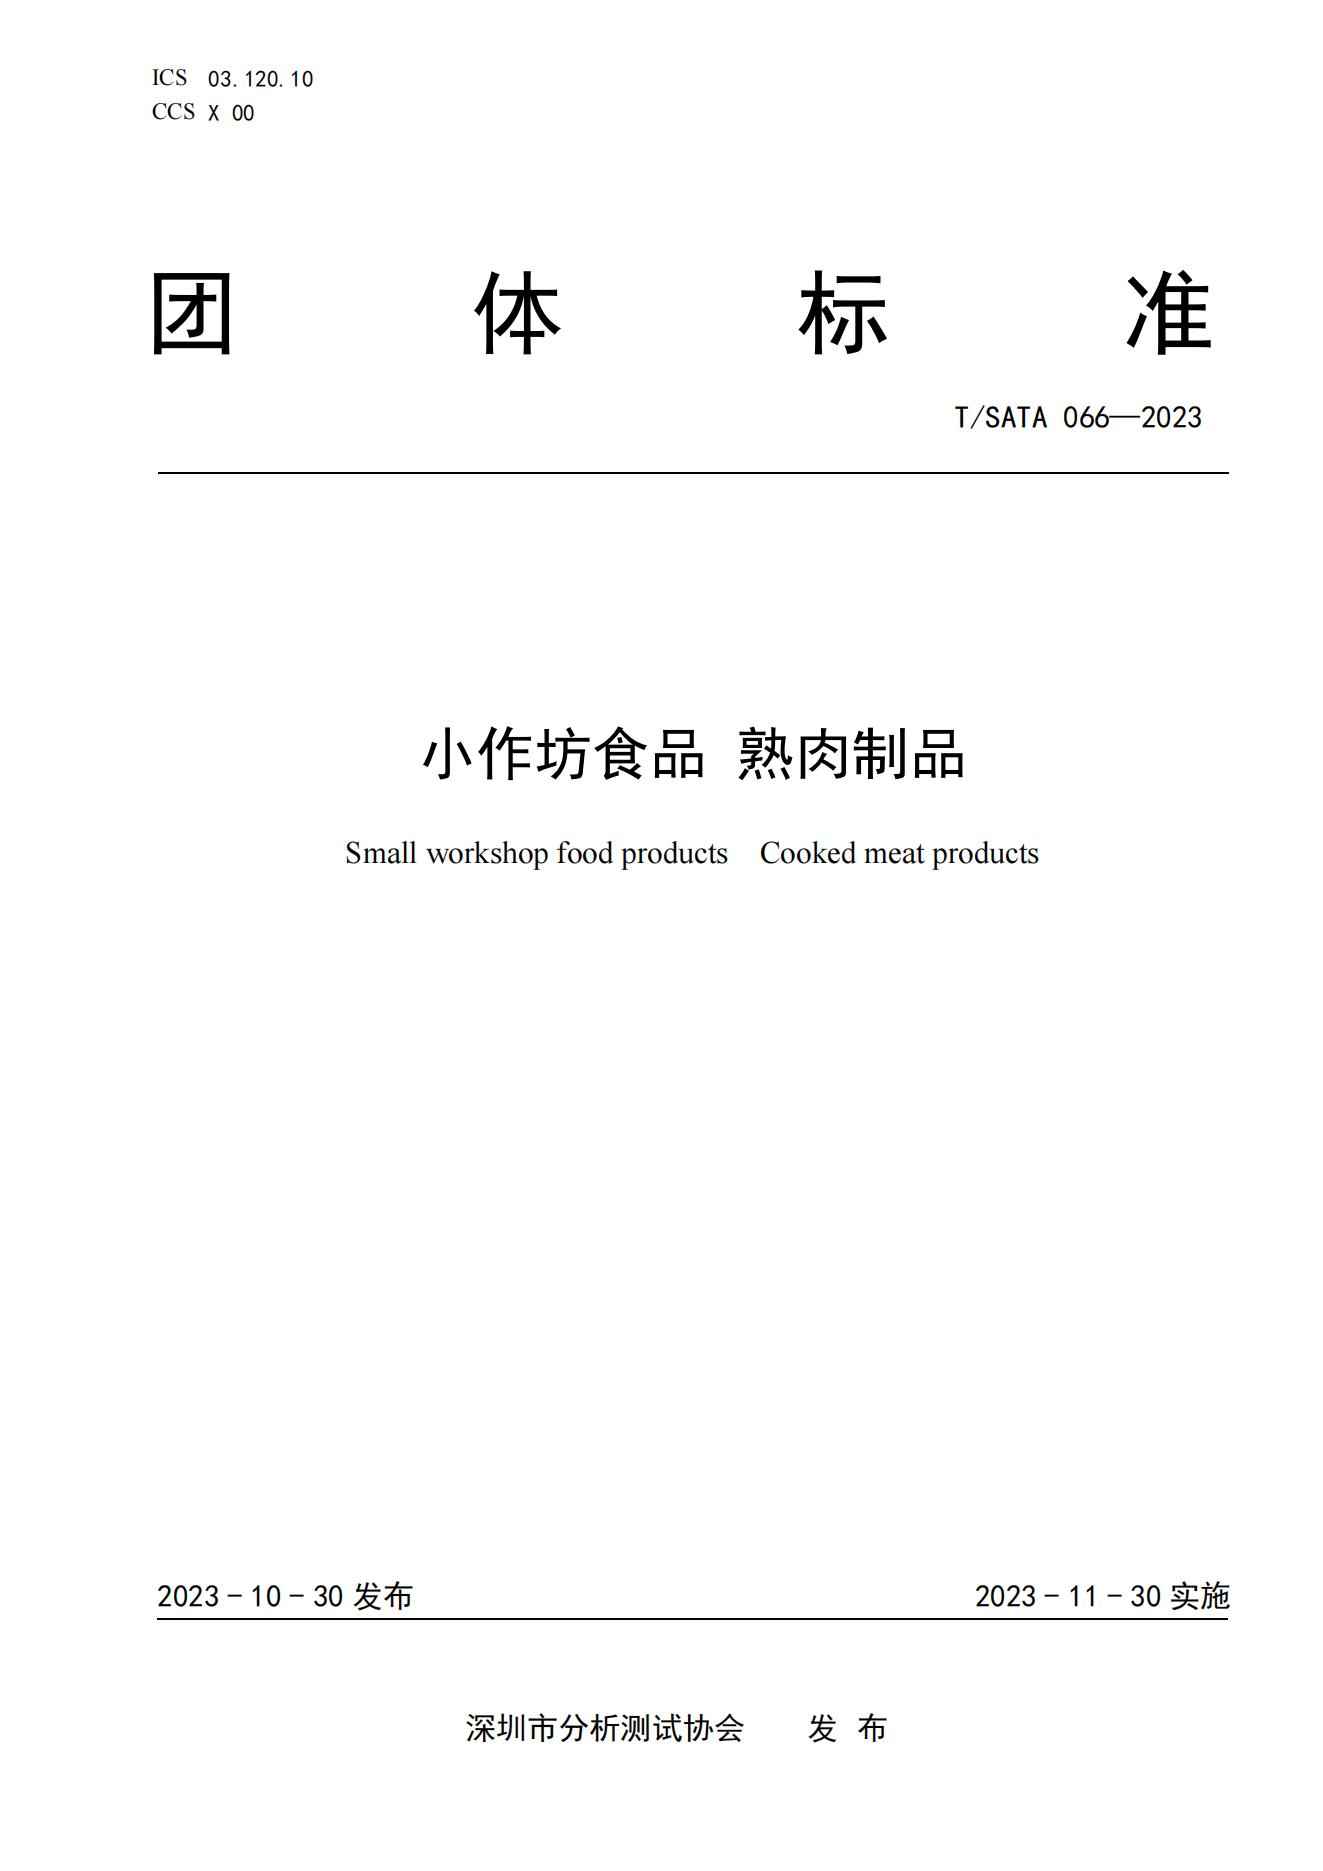 TSATA 066-2023 小作坊食品  熟肉制品(1)_00.jpg